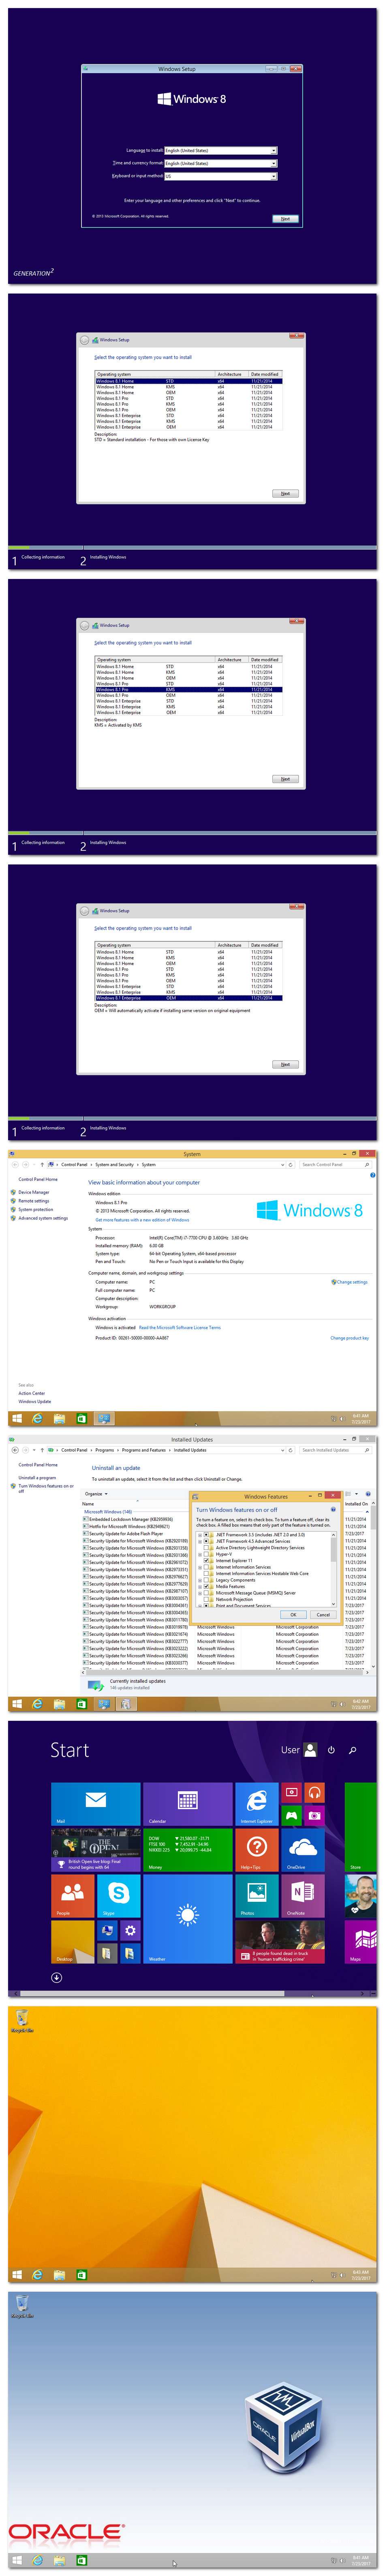 Windows 7 Aio 24in1 2013 Iso Multi Language